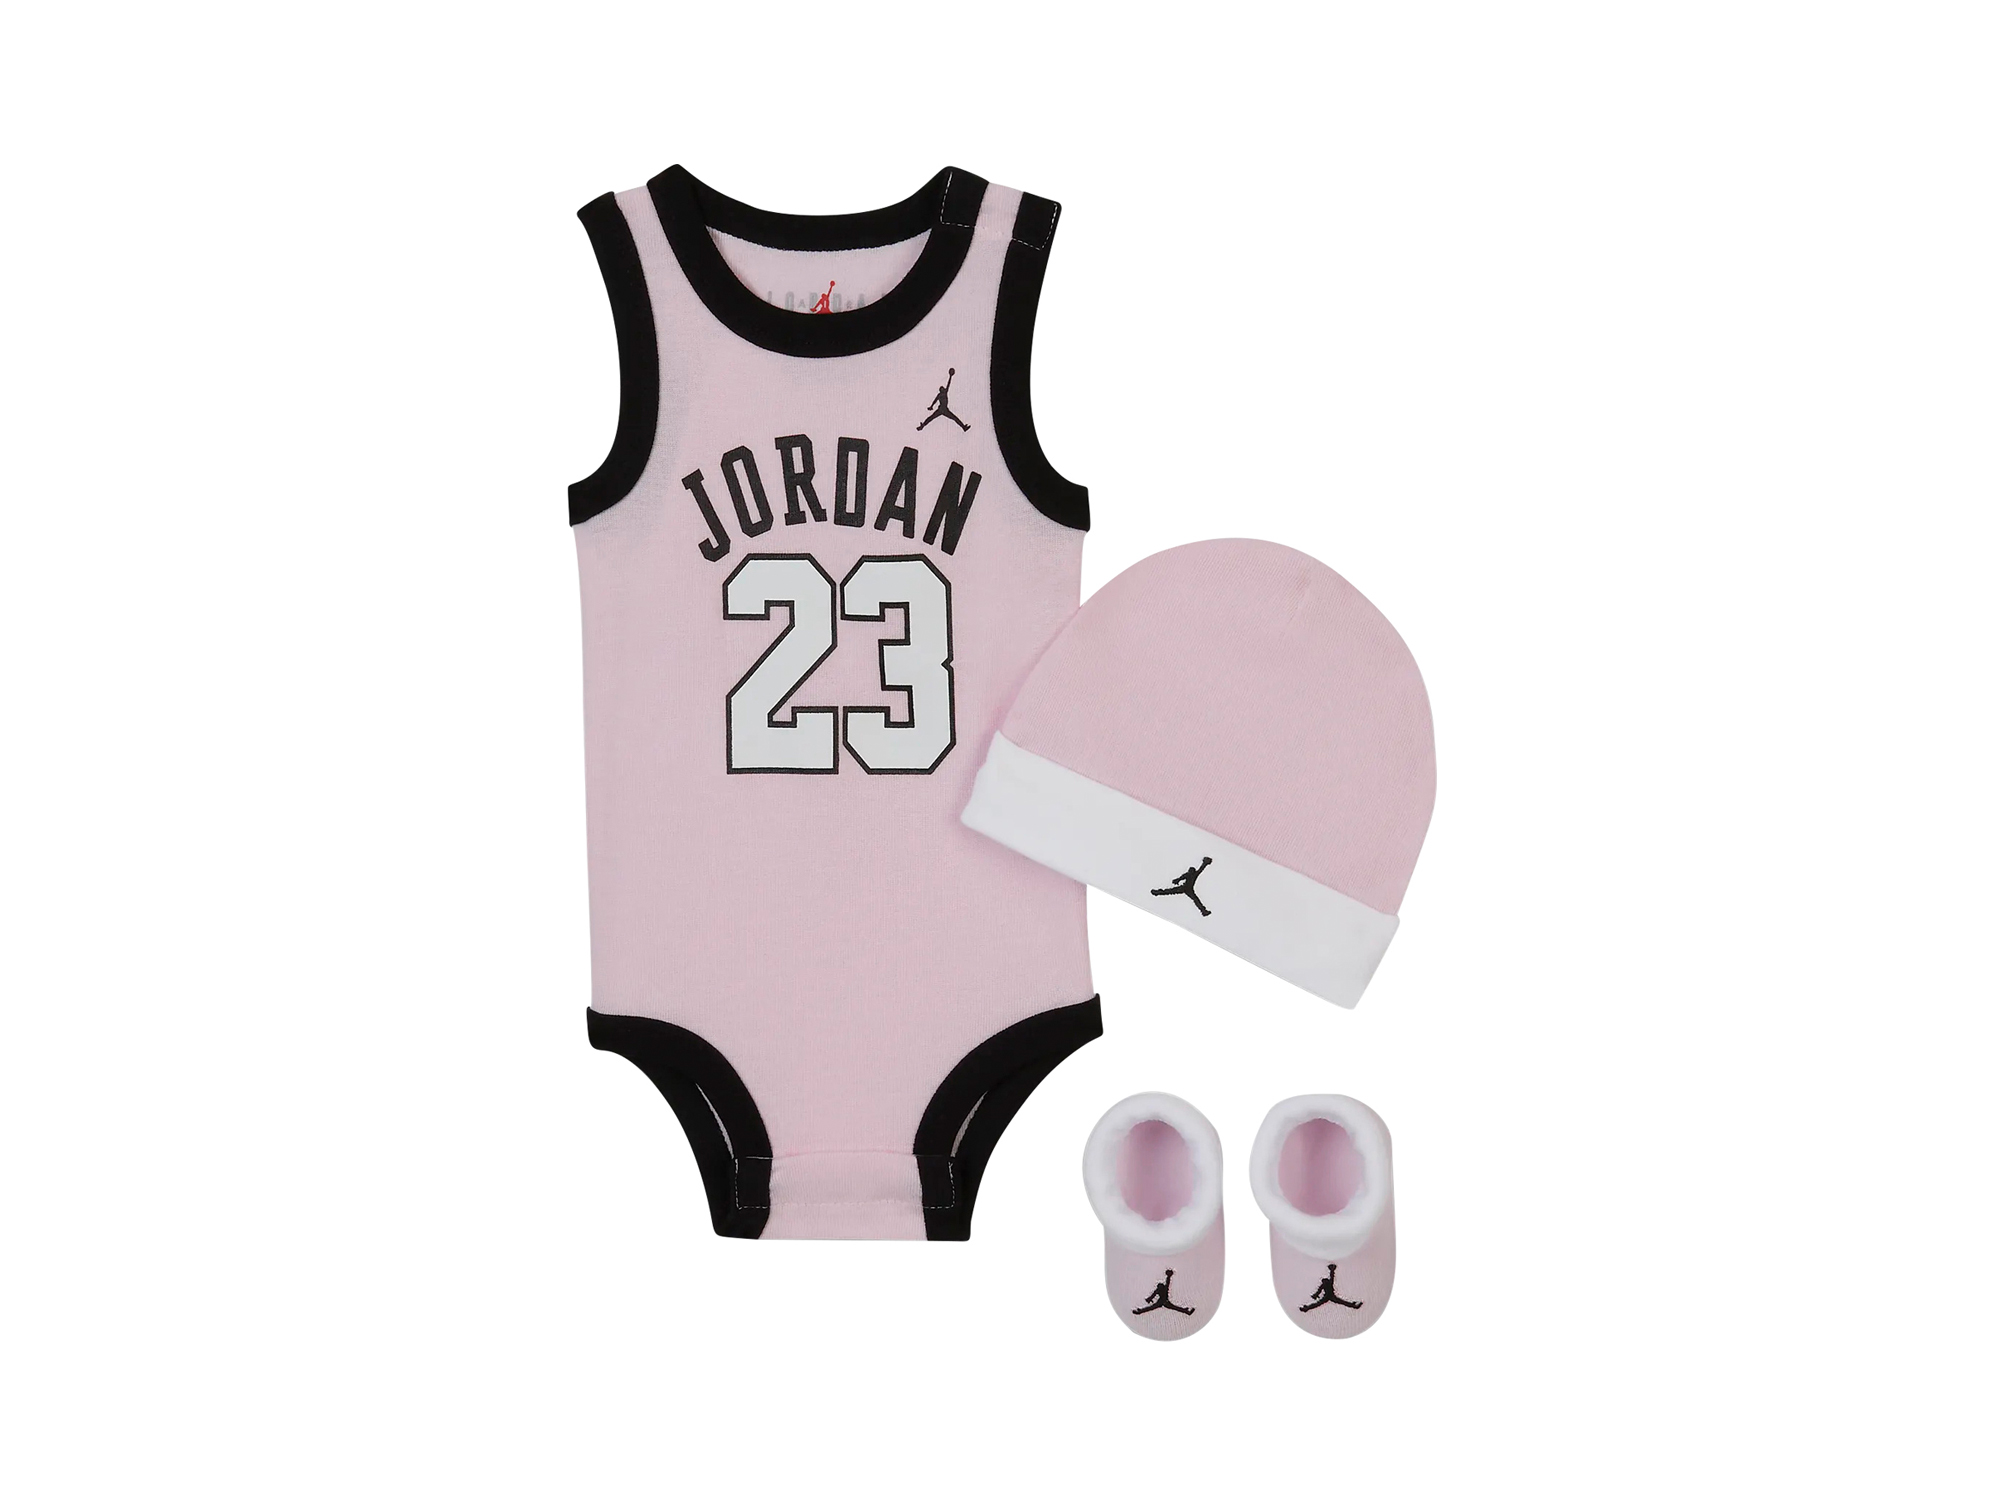 Jordan 23 Jersey 3 Piece Set